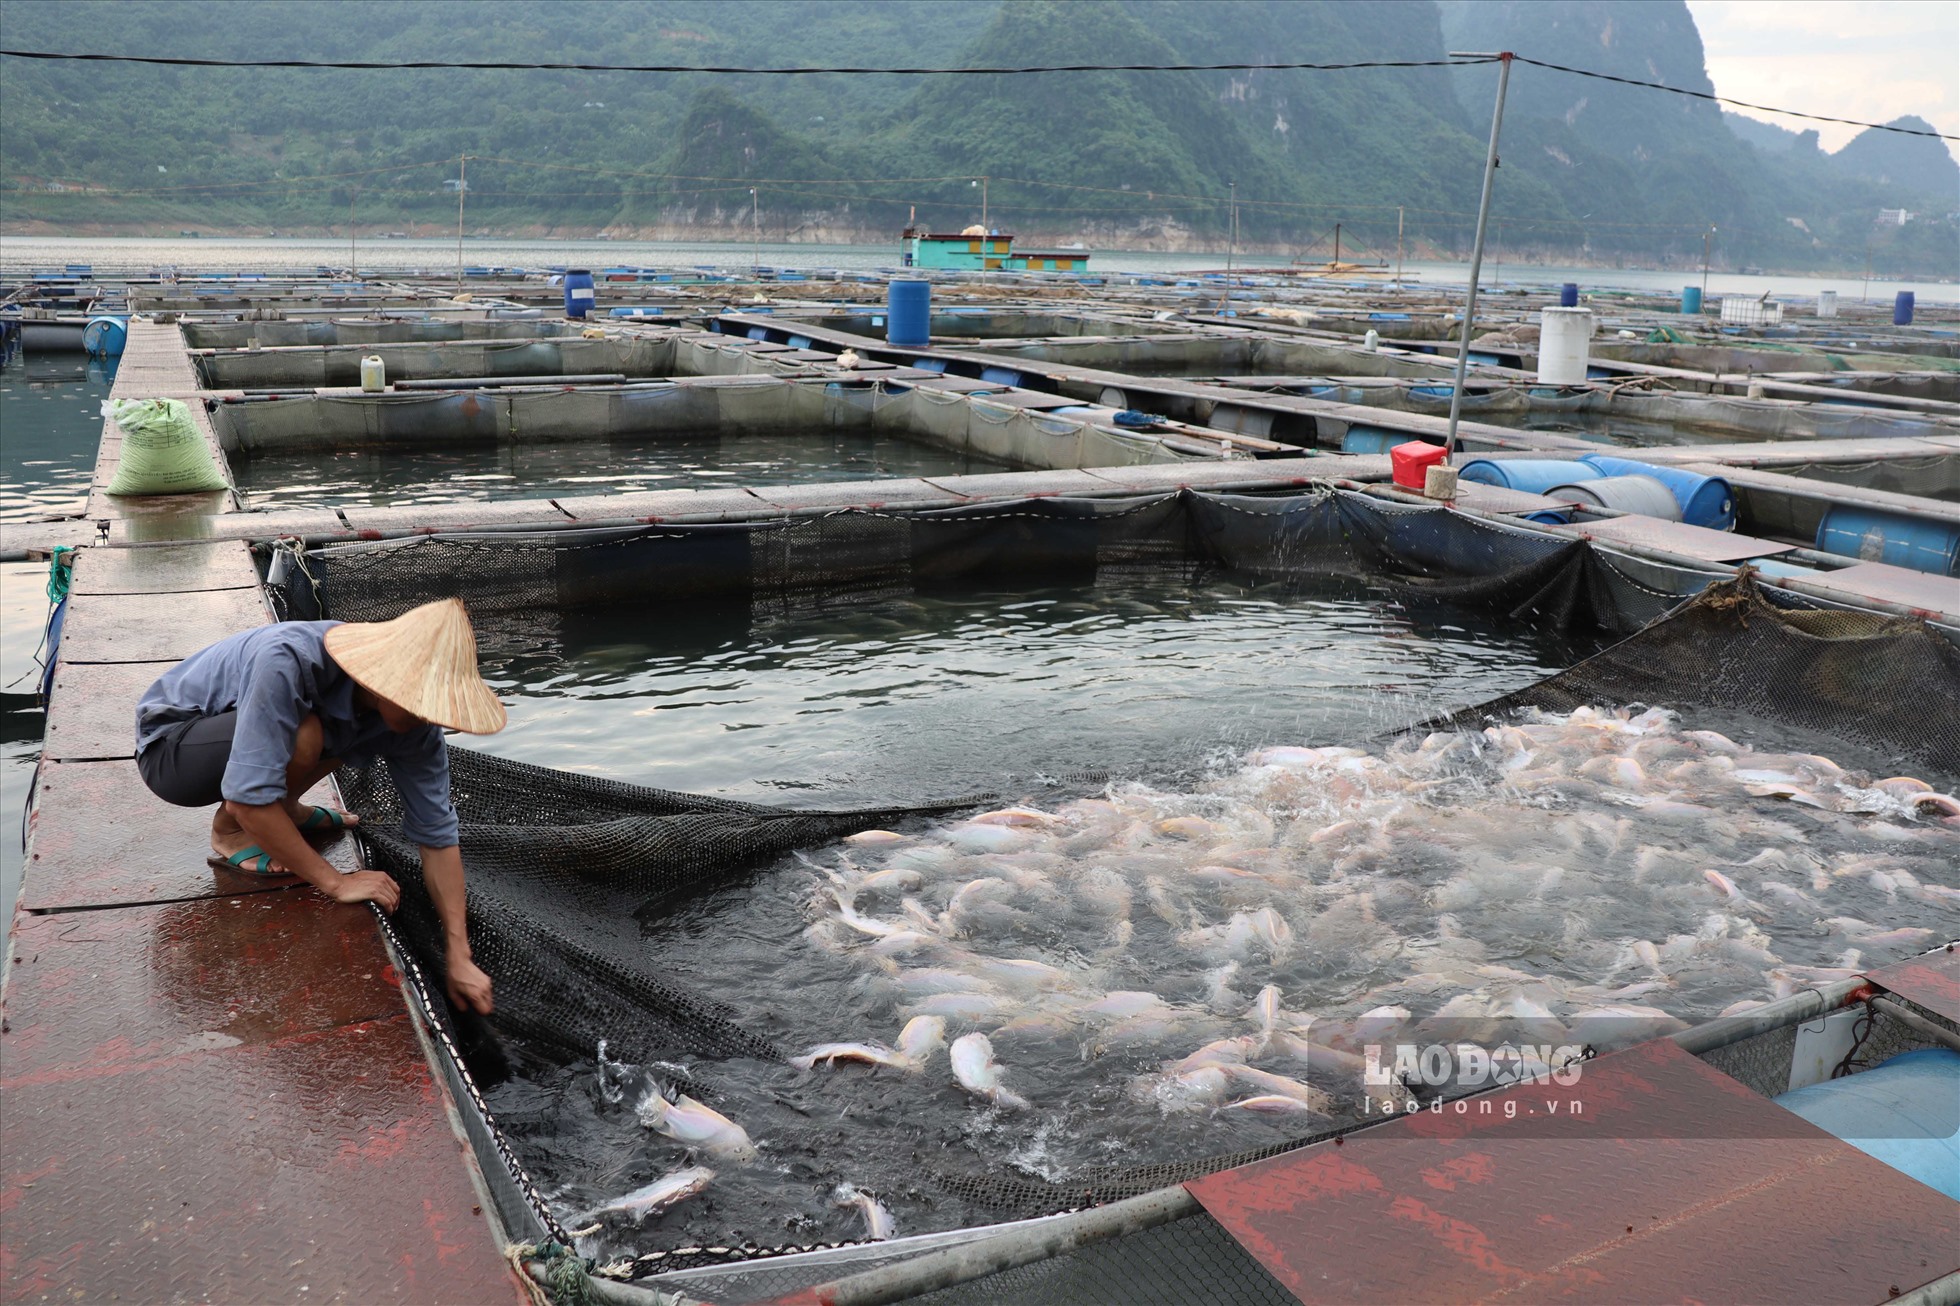 Trang trại nuôi cá lồng Cường Thịnh Fish được hình thành từ năm